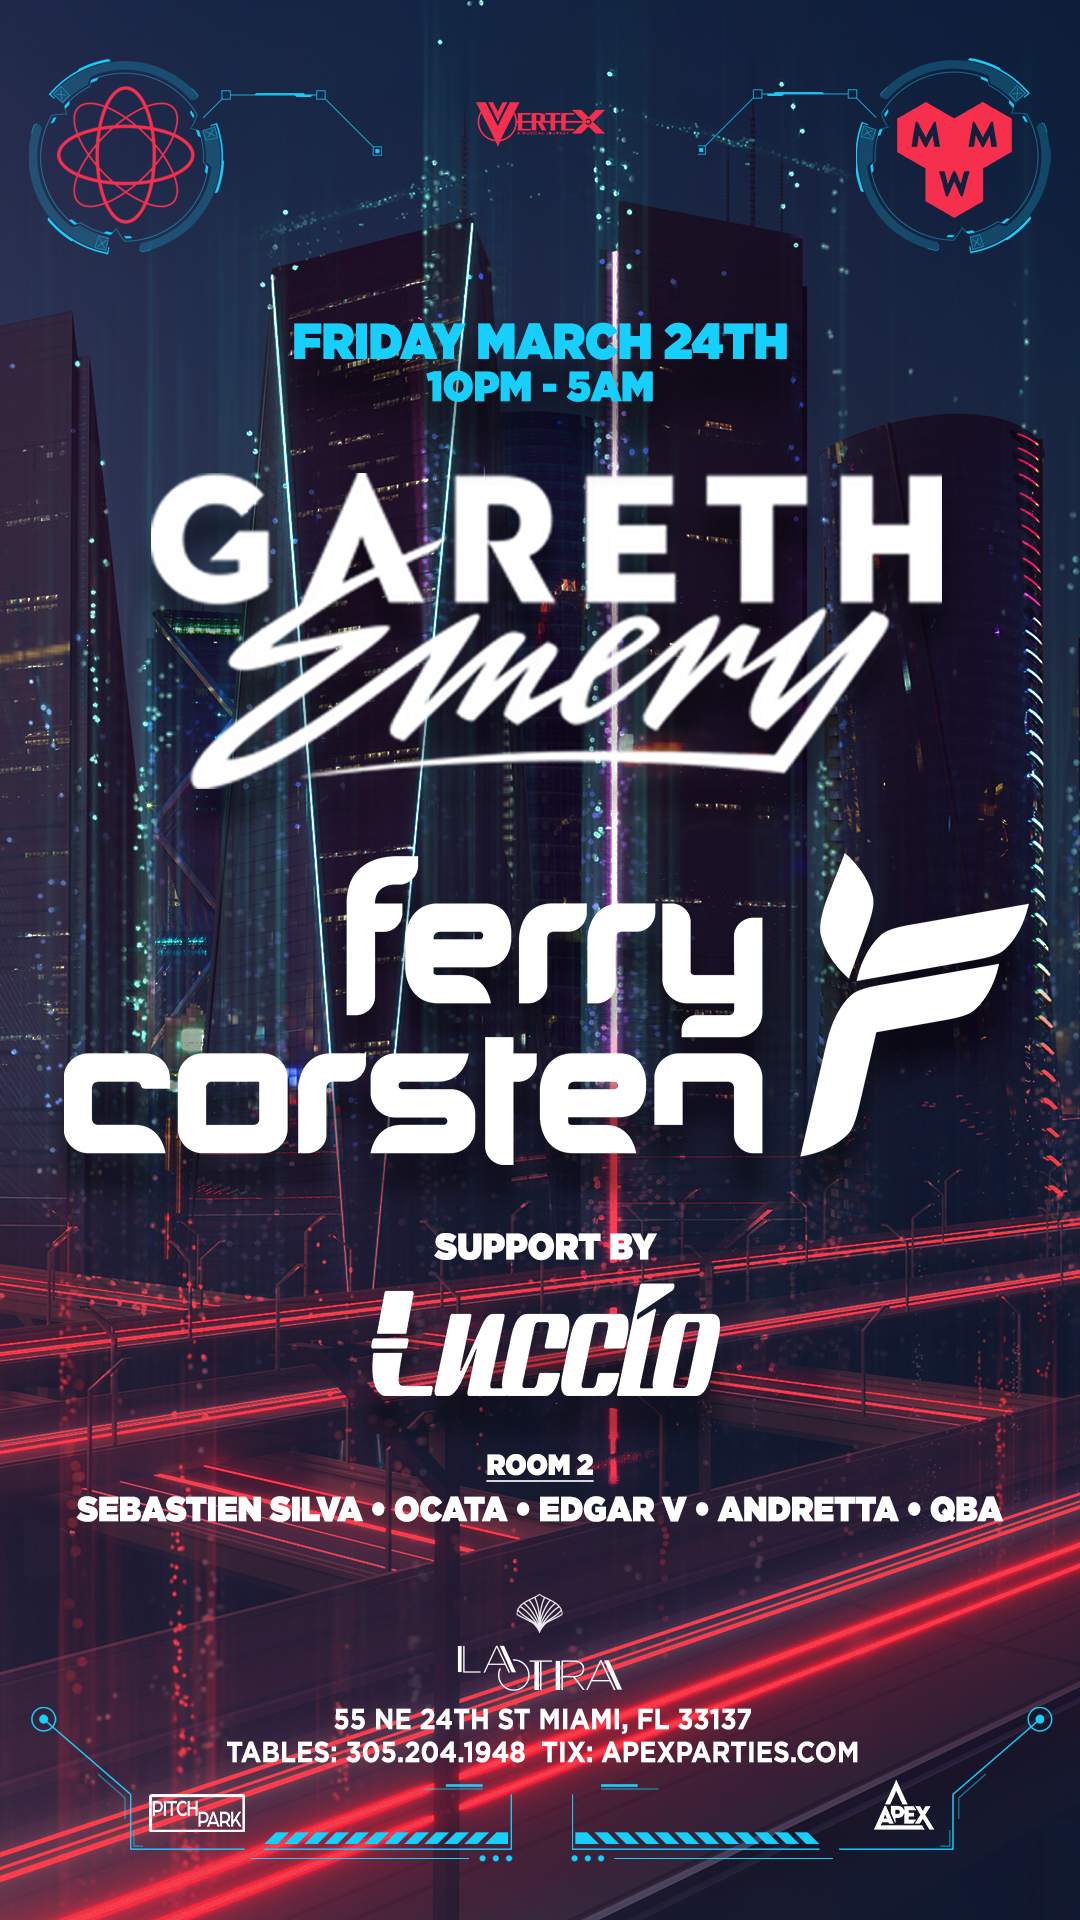 Gareth Emery & Ferry Corsten at Miami Music Week - フライヤー表